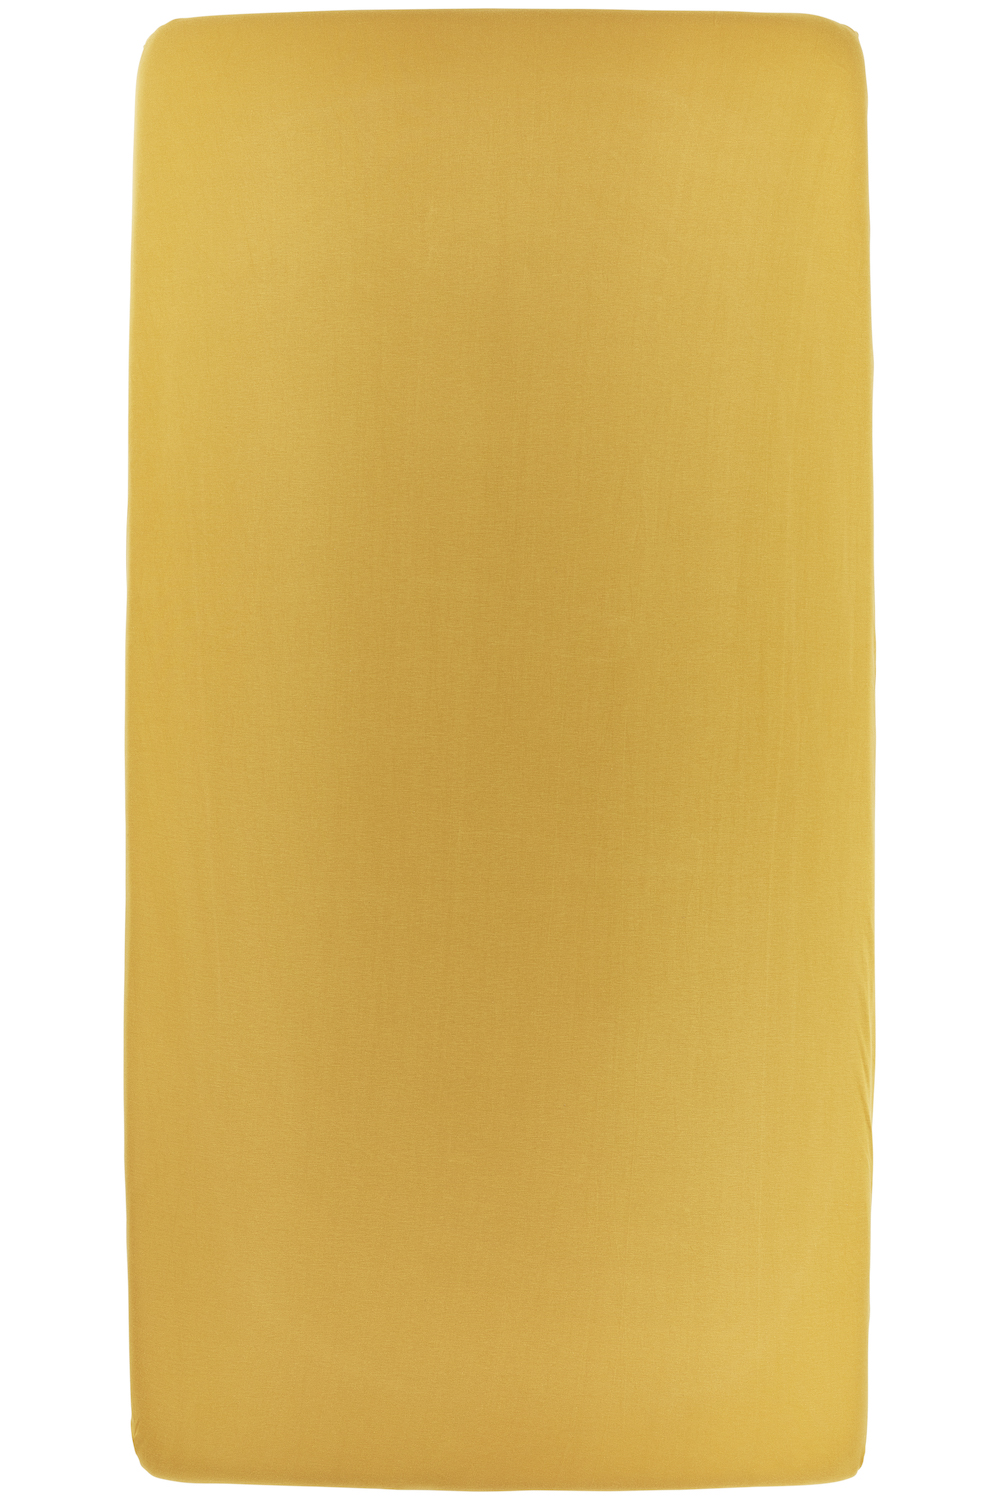 Hoeslaken twijfelaar Uni - honey gold - 120x200cm